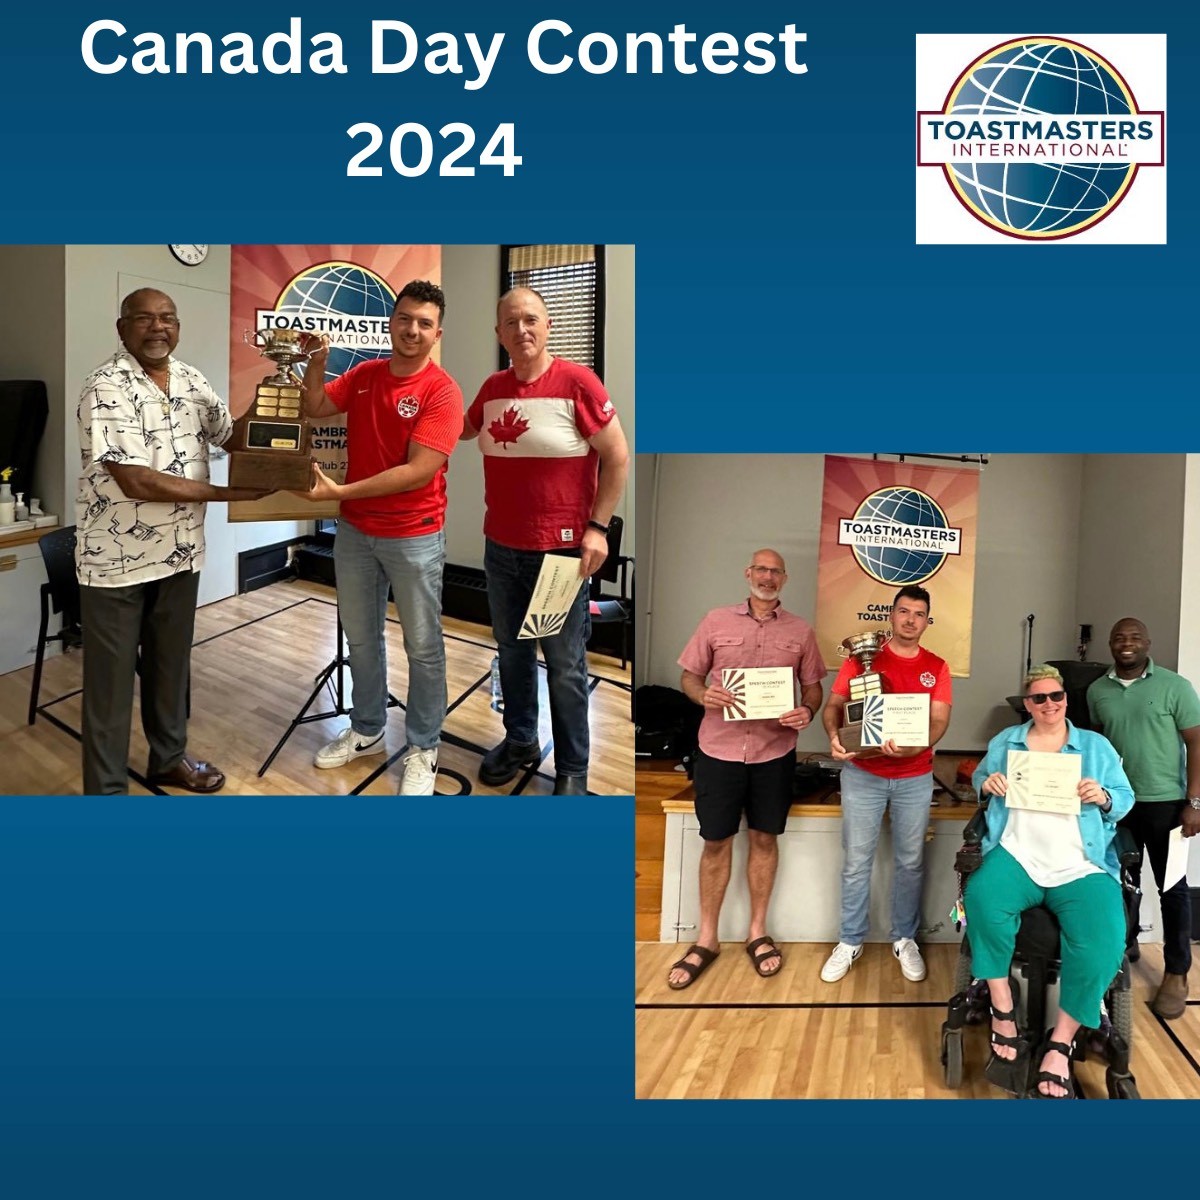 Canada Day Contest 2024